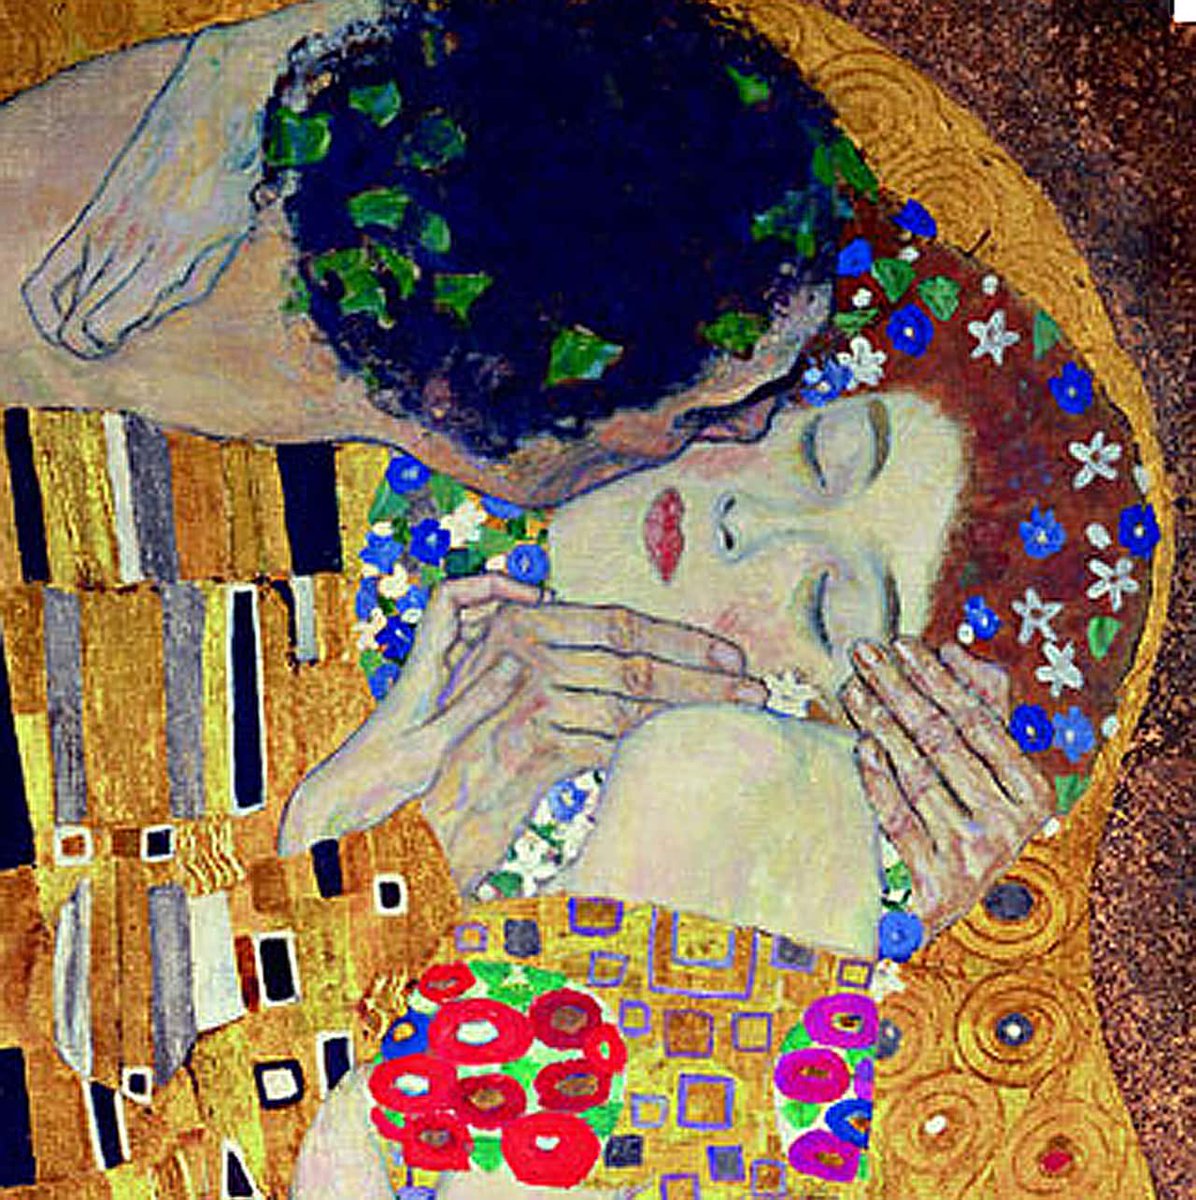 Il sogno è l'ultima notizia che possiedo di te.

Franz Kafka
Lettere a Milena

#ISogniSonDesideri 
#SalaLettura 

Klimt 🎨